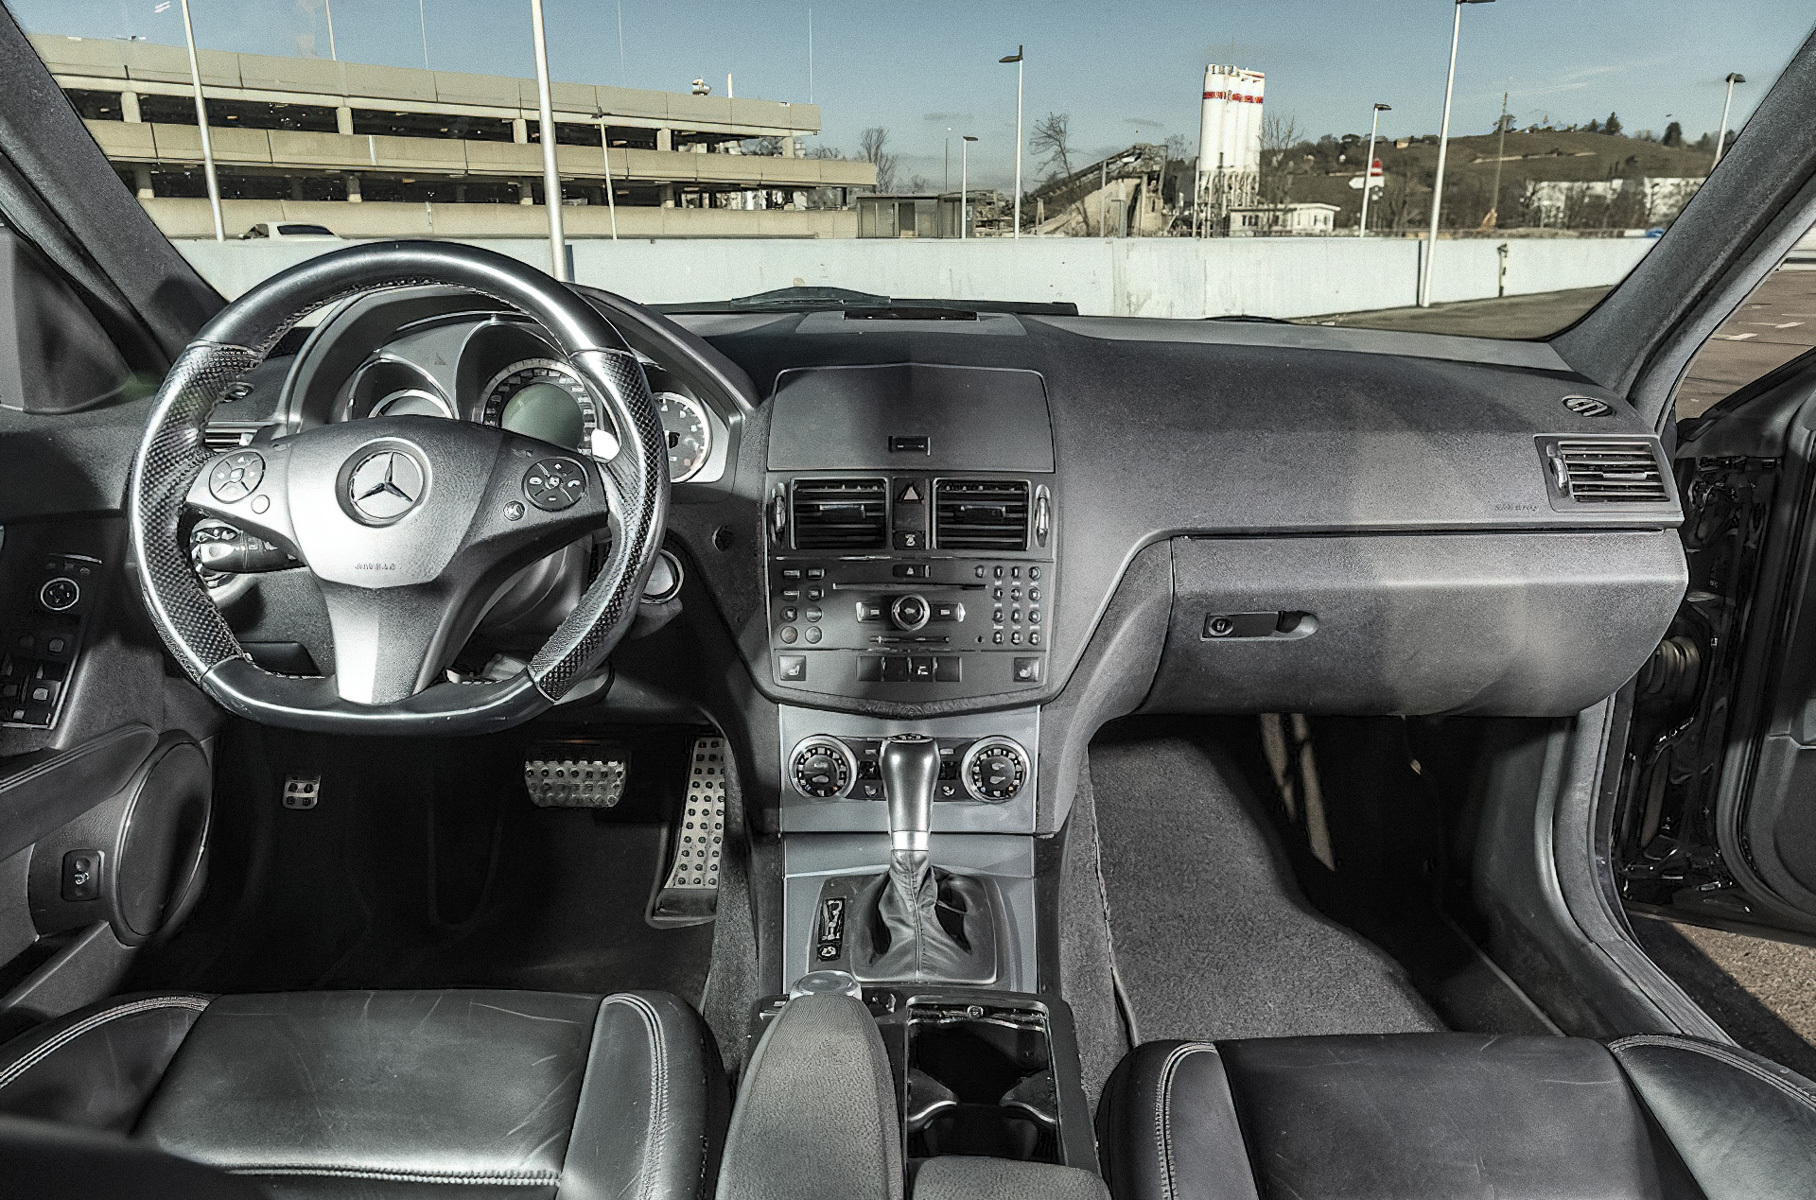 Универсал Mercedes-Benz C63 AMG, принадлежавший Михаэлю Шумахеру, пустят с молотка